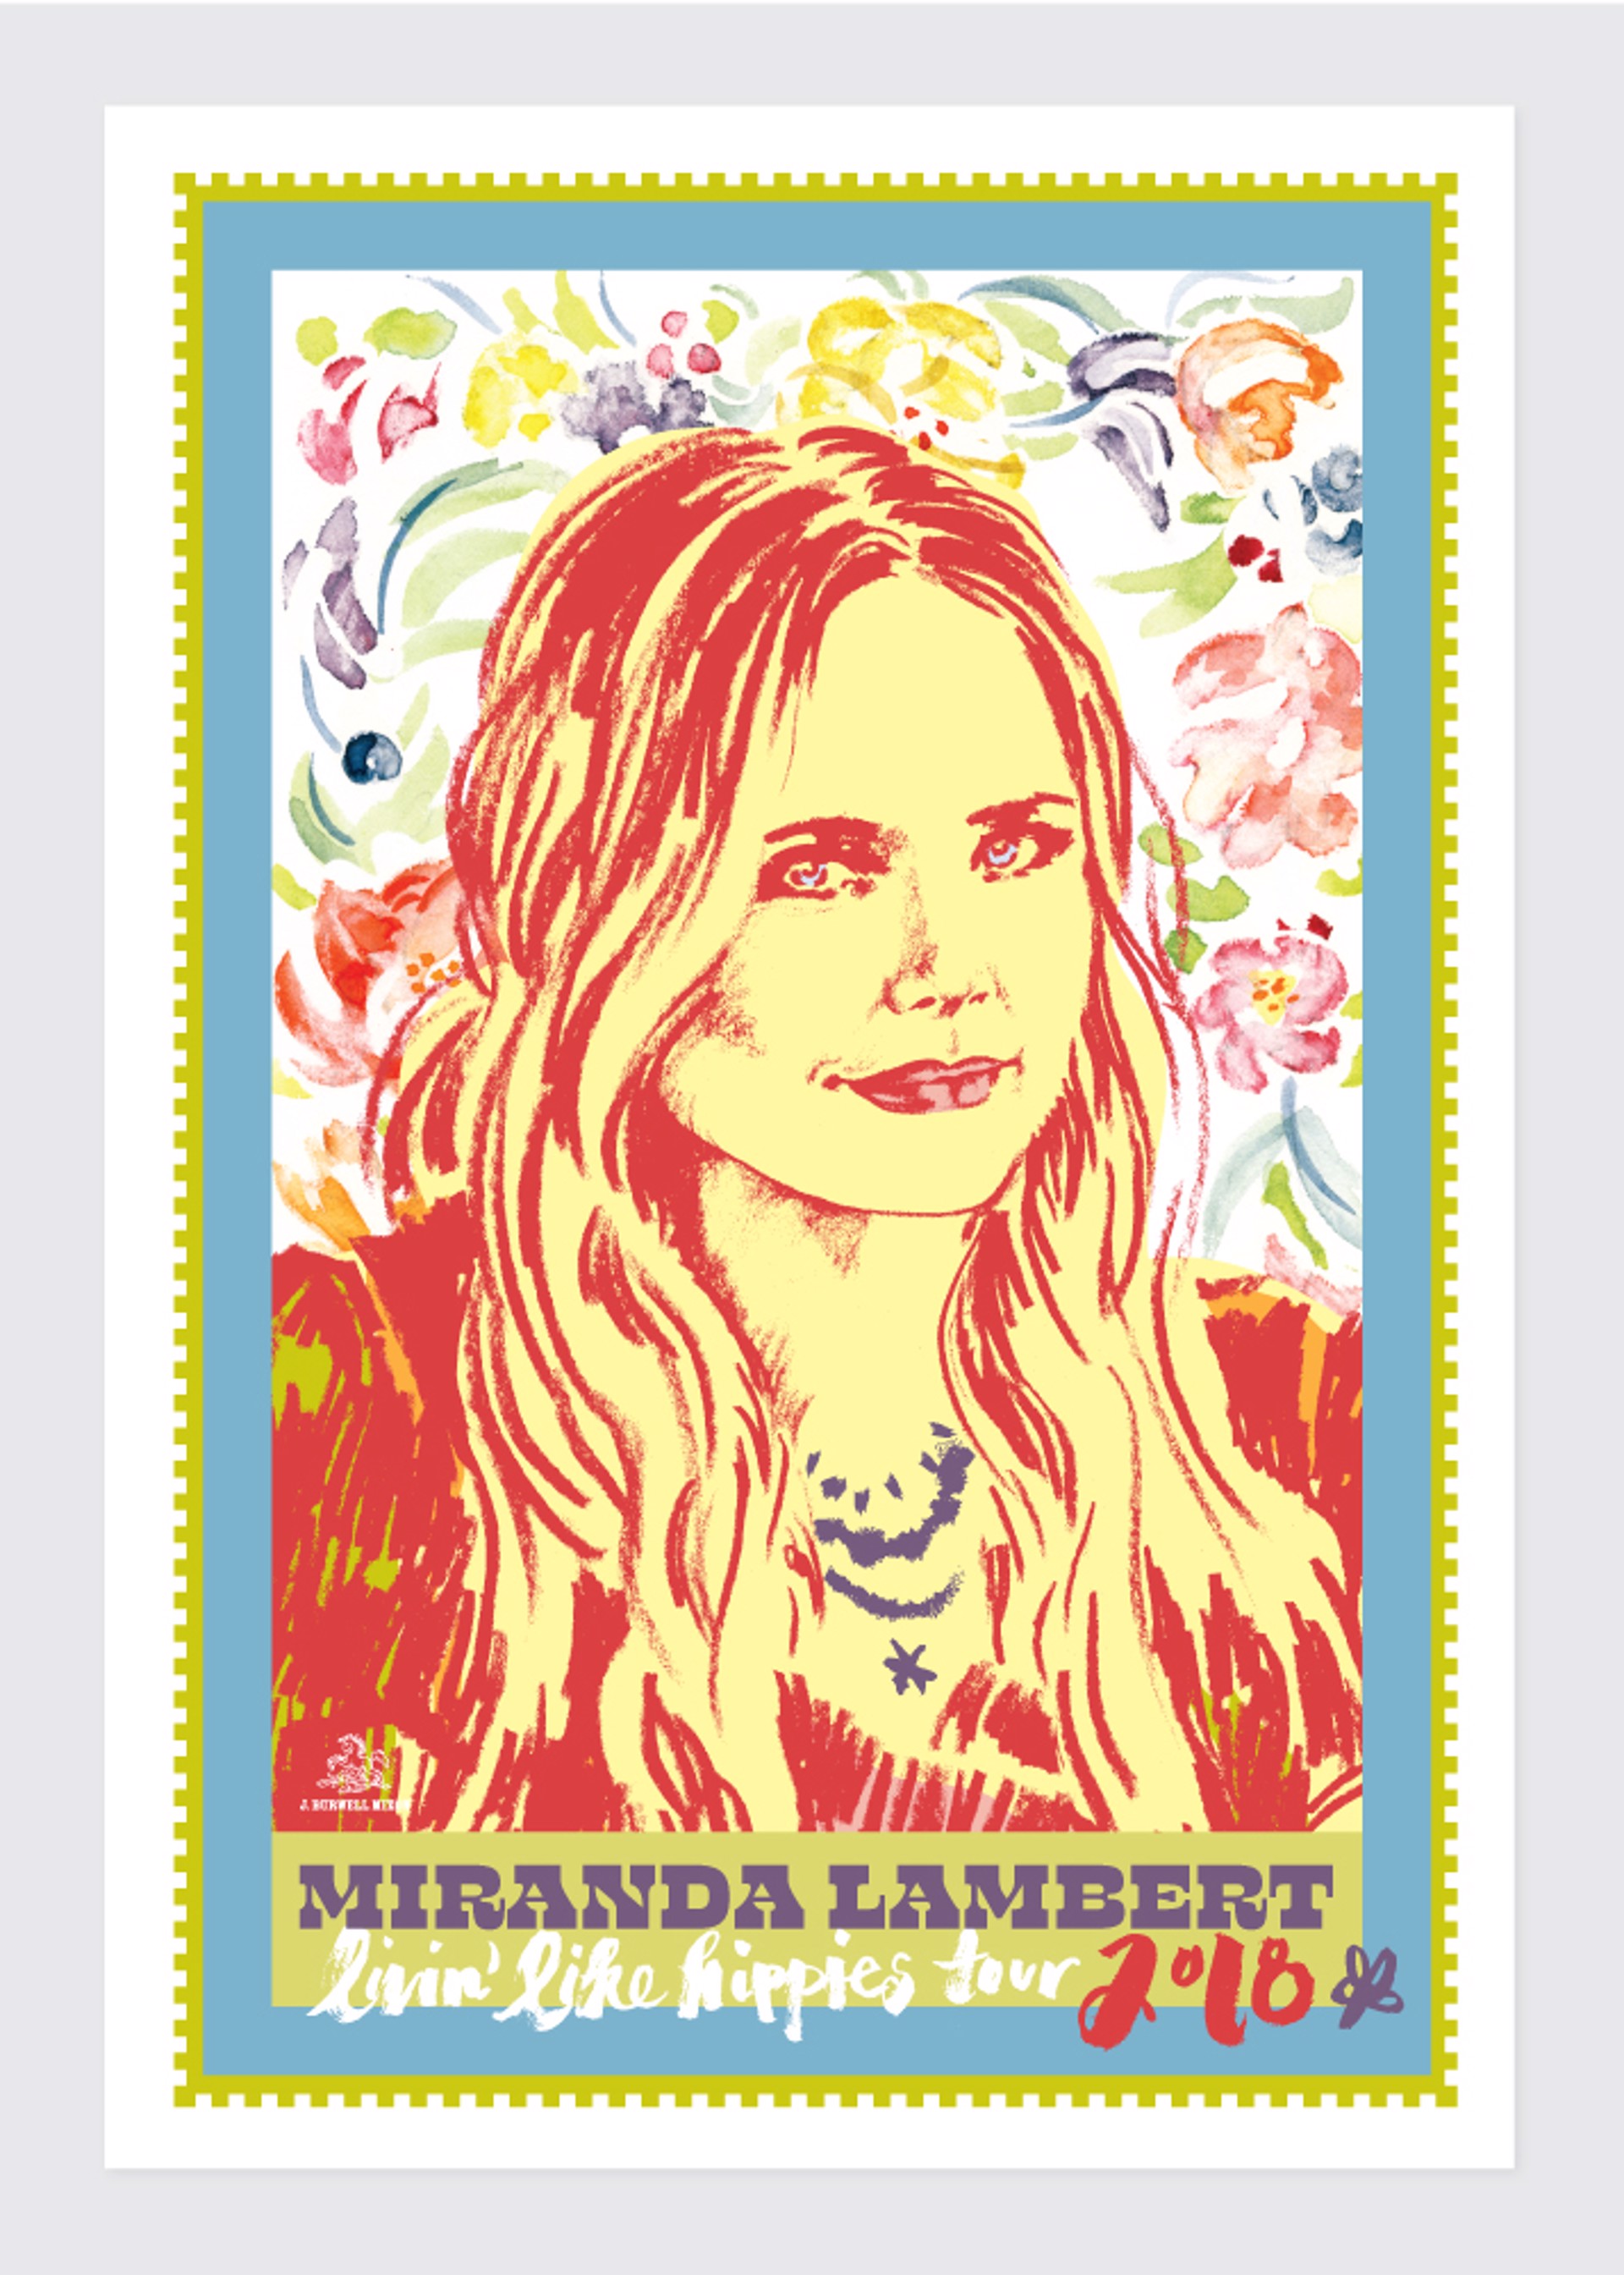 Miranda Lambert Concert Poster by Jamie Burwell Mixon